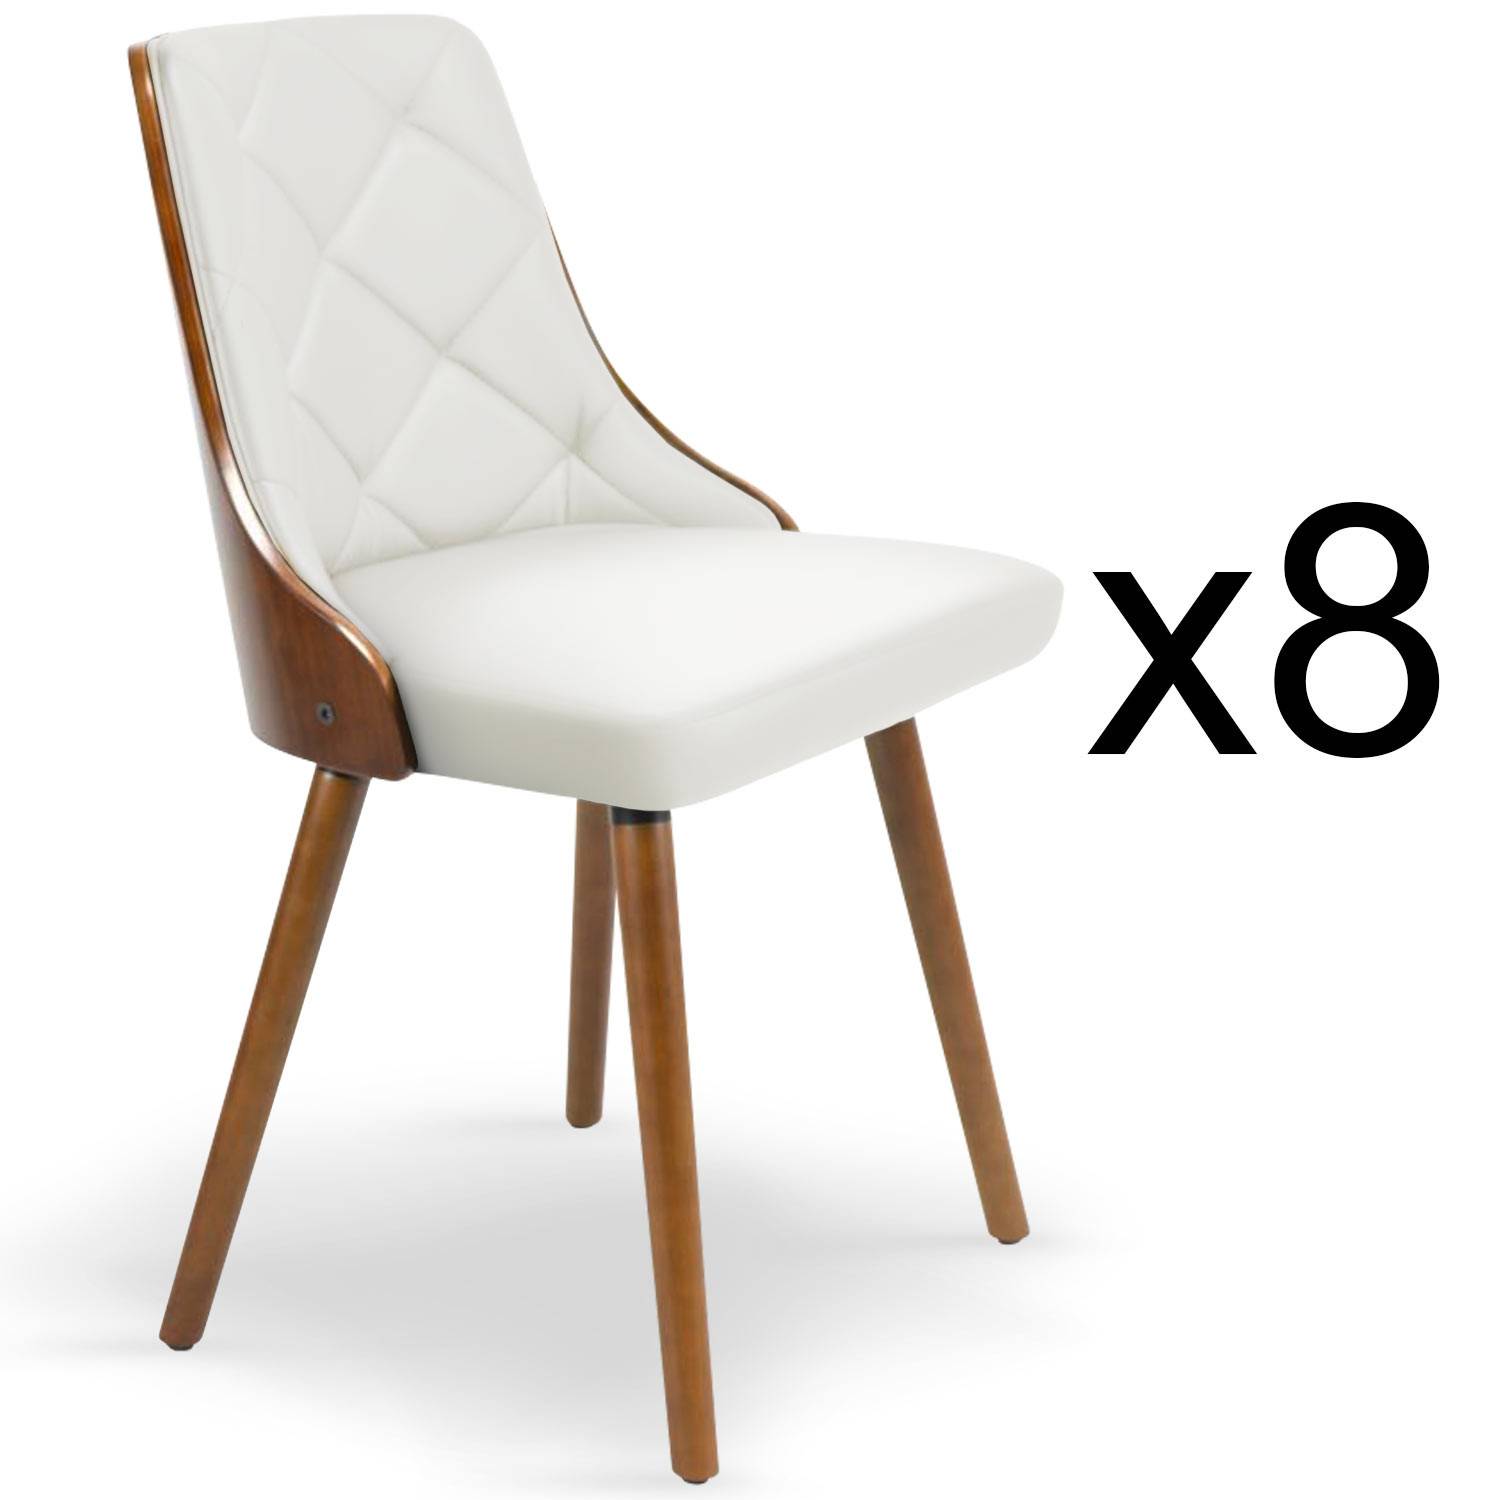 Lote de 8 sillas escandinavas Lalix de madera avellana y blanca